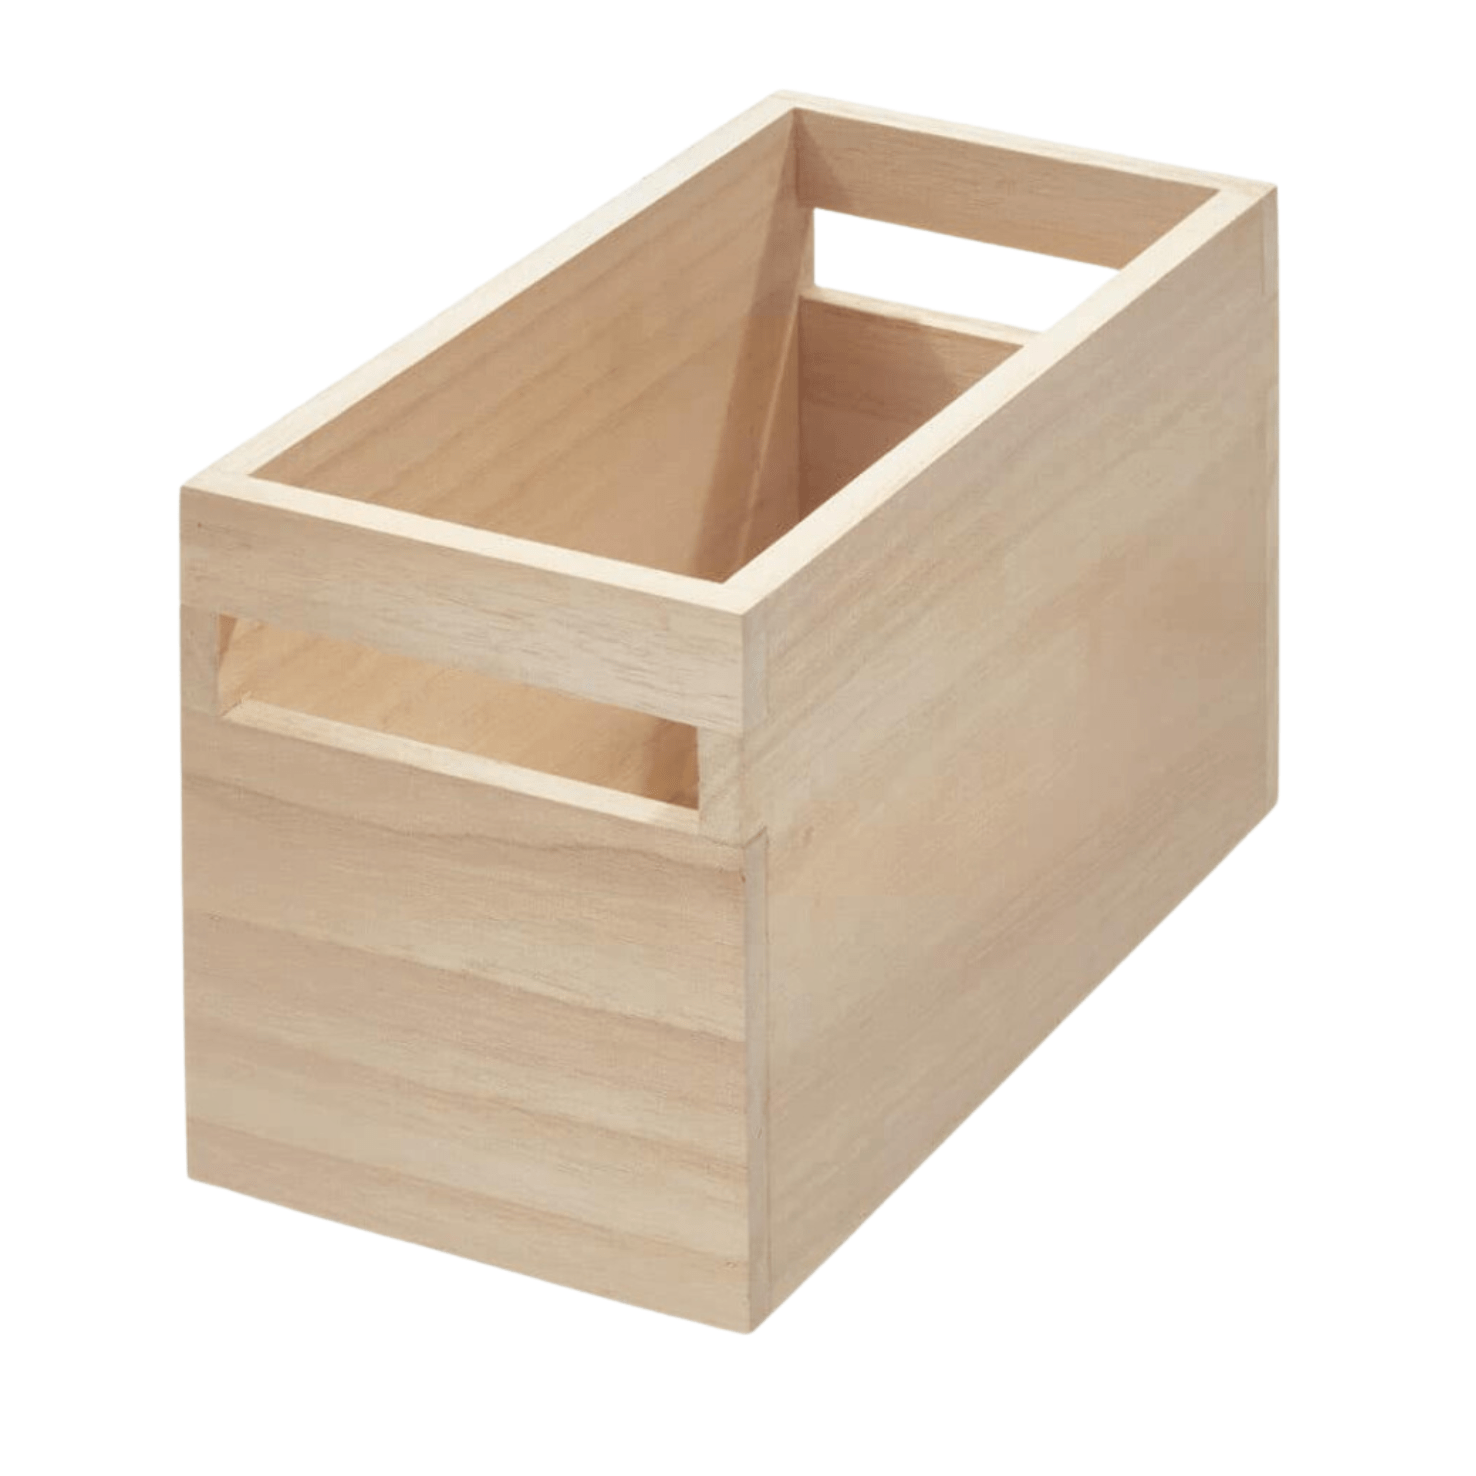 Long wooden box